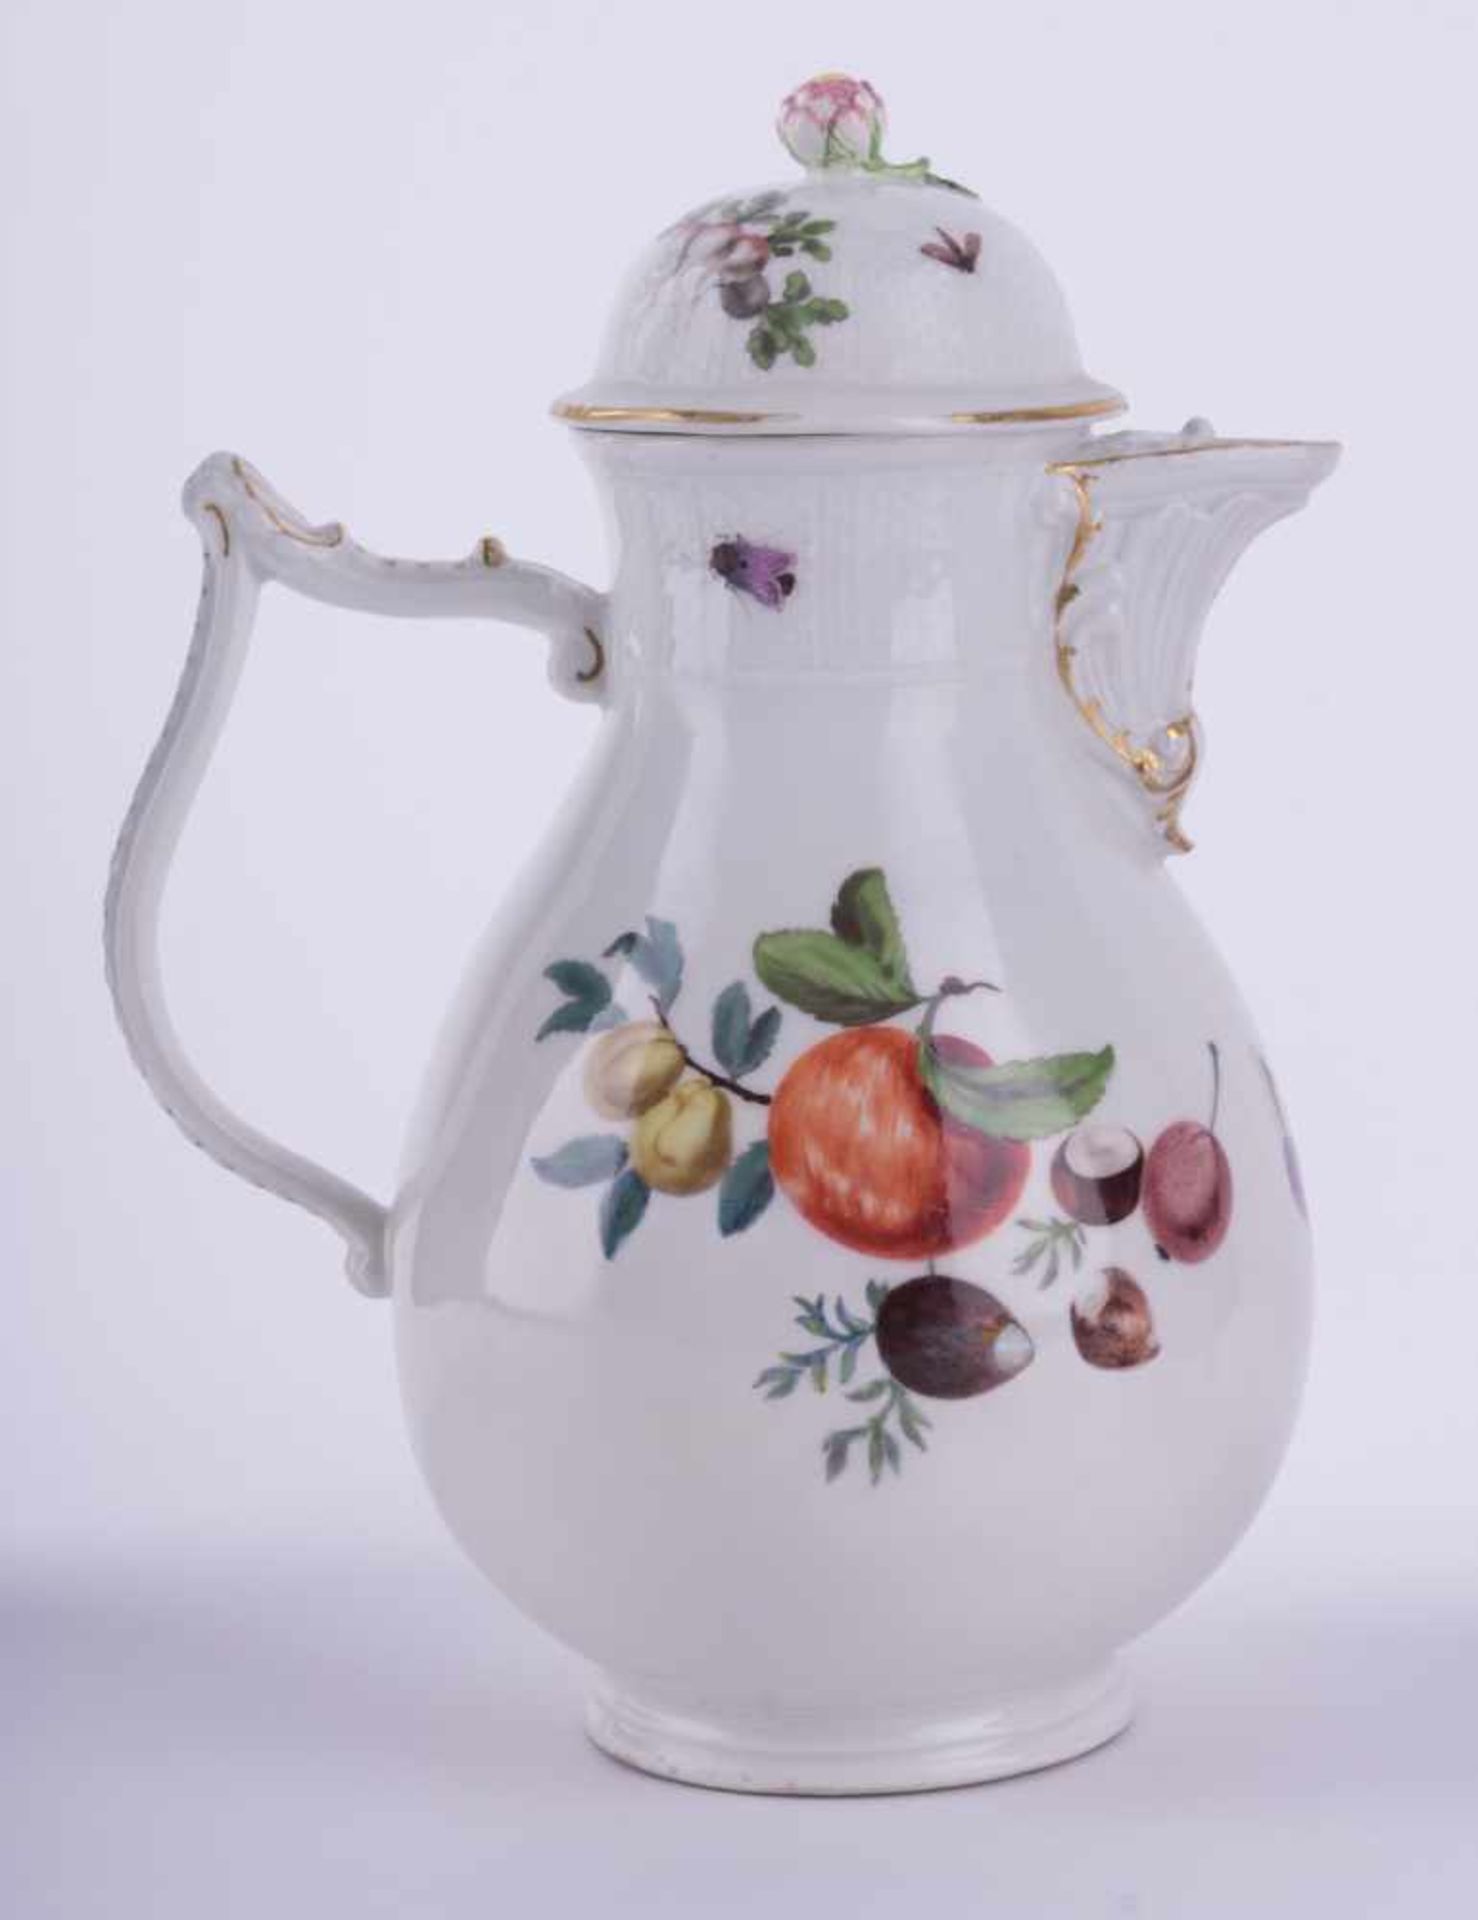 Kaffeekanne Meissen um 1740 / coffeepot, Meissen, about 1740 Modell von J.J. Kaendler, farbig - Bild 2 aus 4